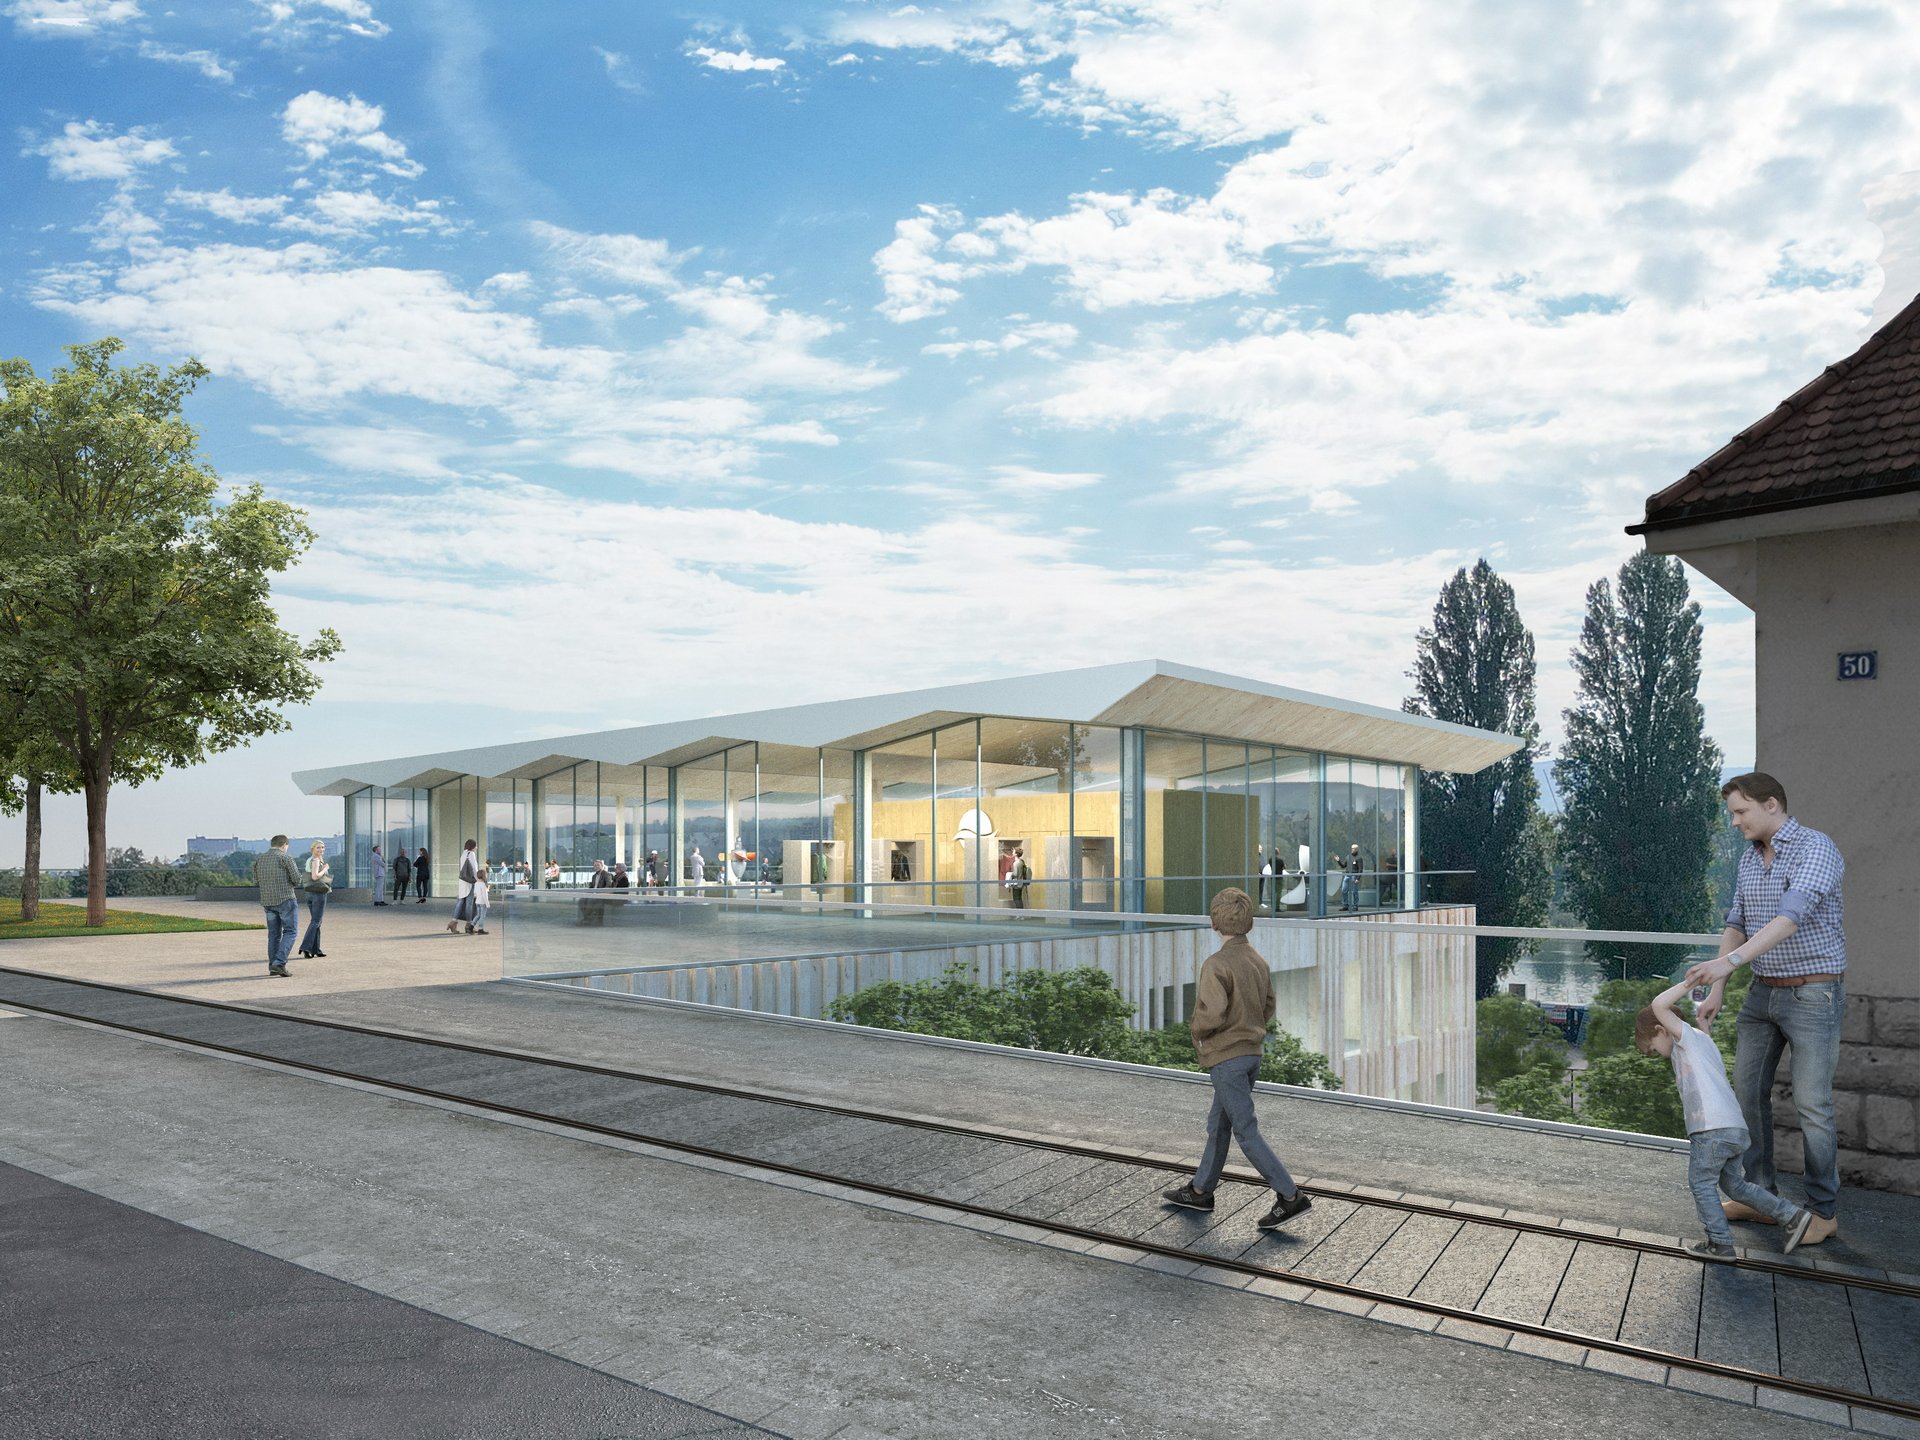 Besucherzentrum-Naturenergie-dritter-Preis-Visualisierung-Link3d-K9-Architekten-Freiburg.jpg